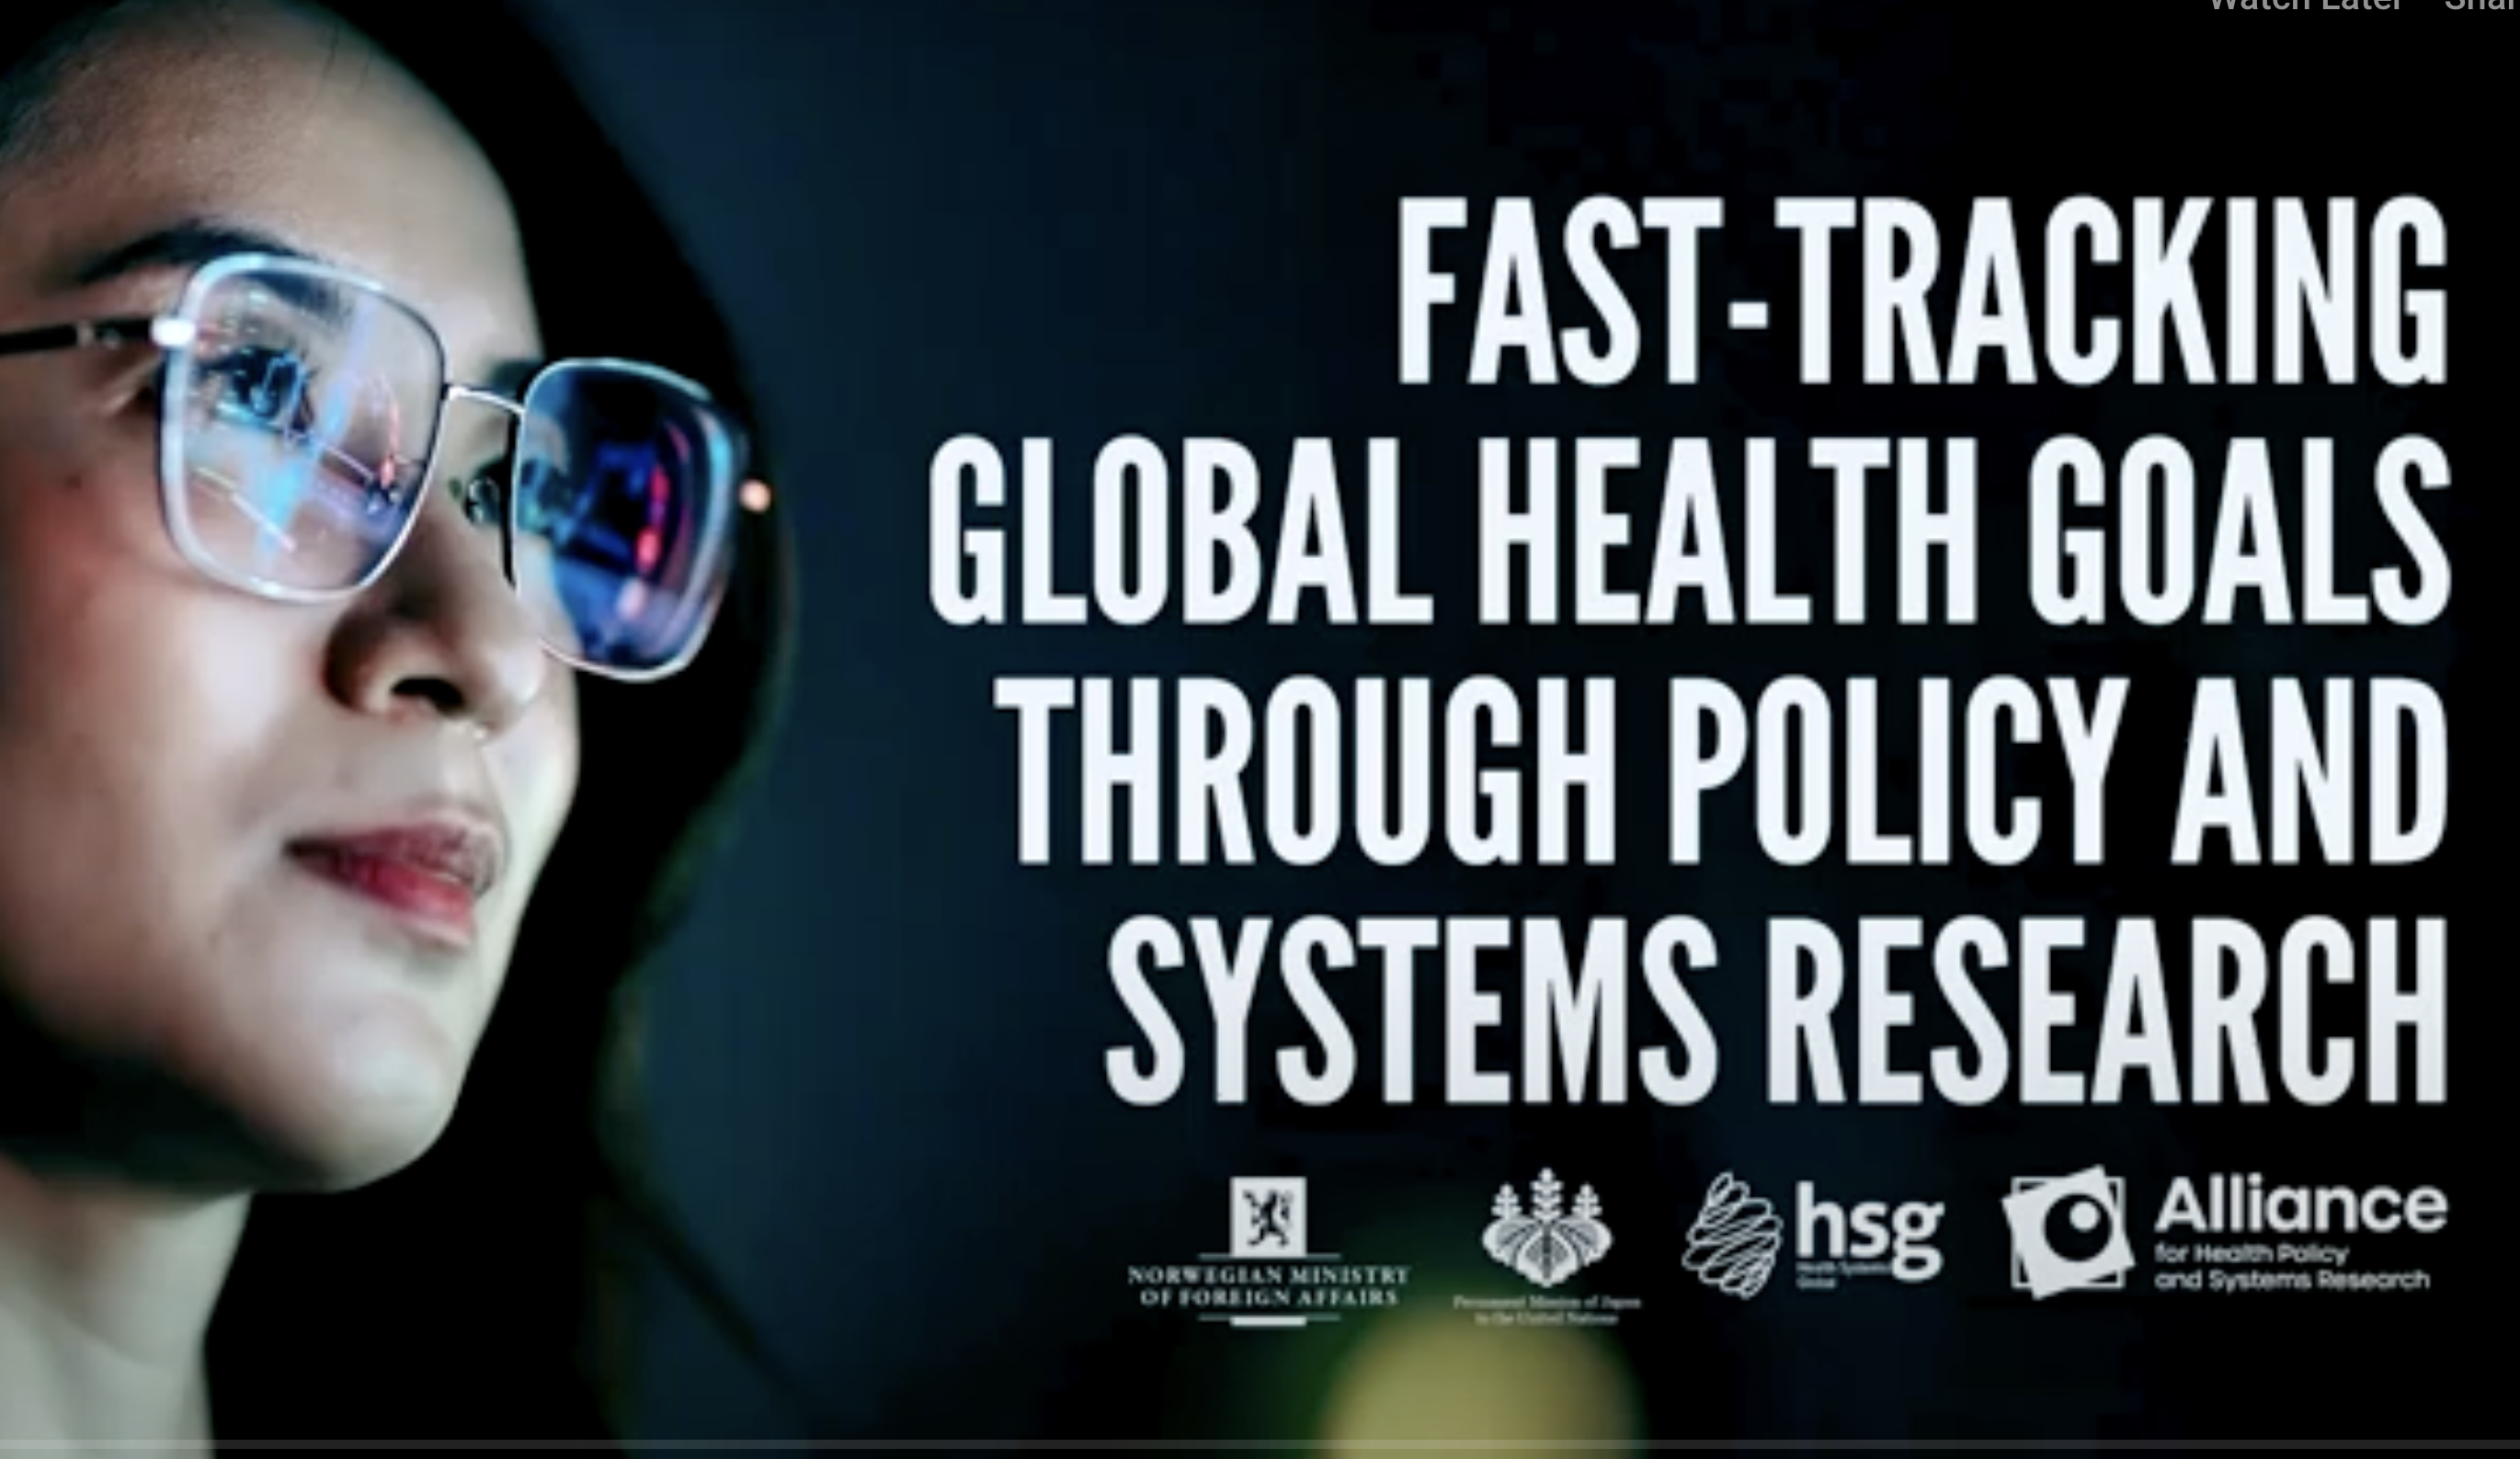 Acto paralelo de la 78ª AGNU: Acelerar la consecución de los objetivos sanitarios mundiales mediante la investigación sobre políticas y sistemas sanitarios